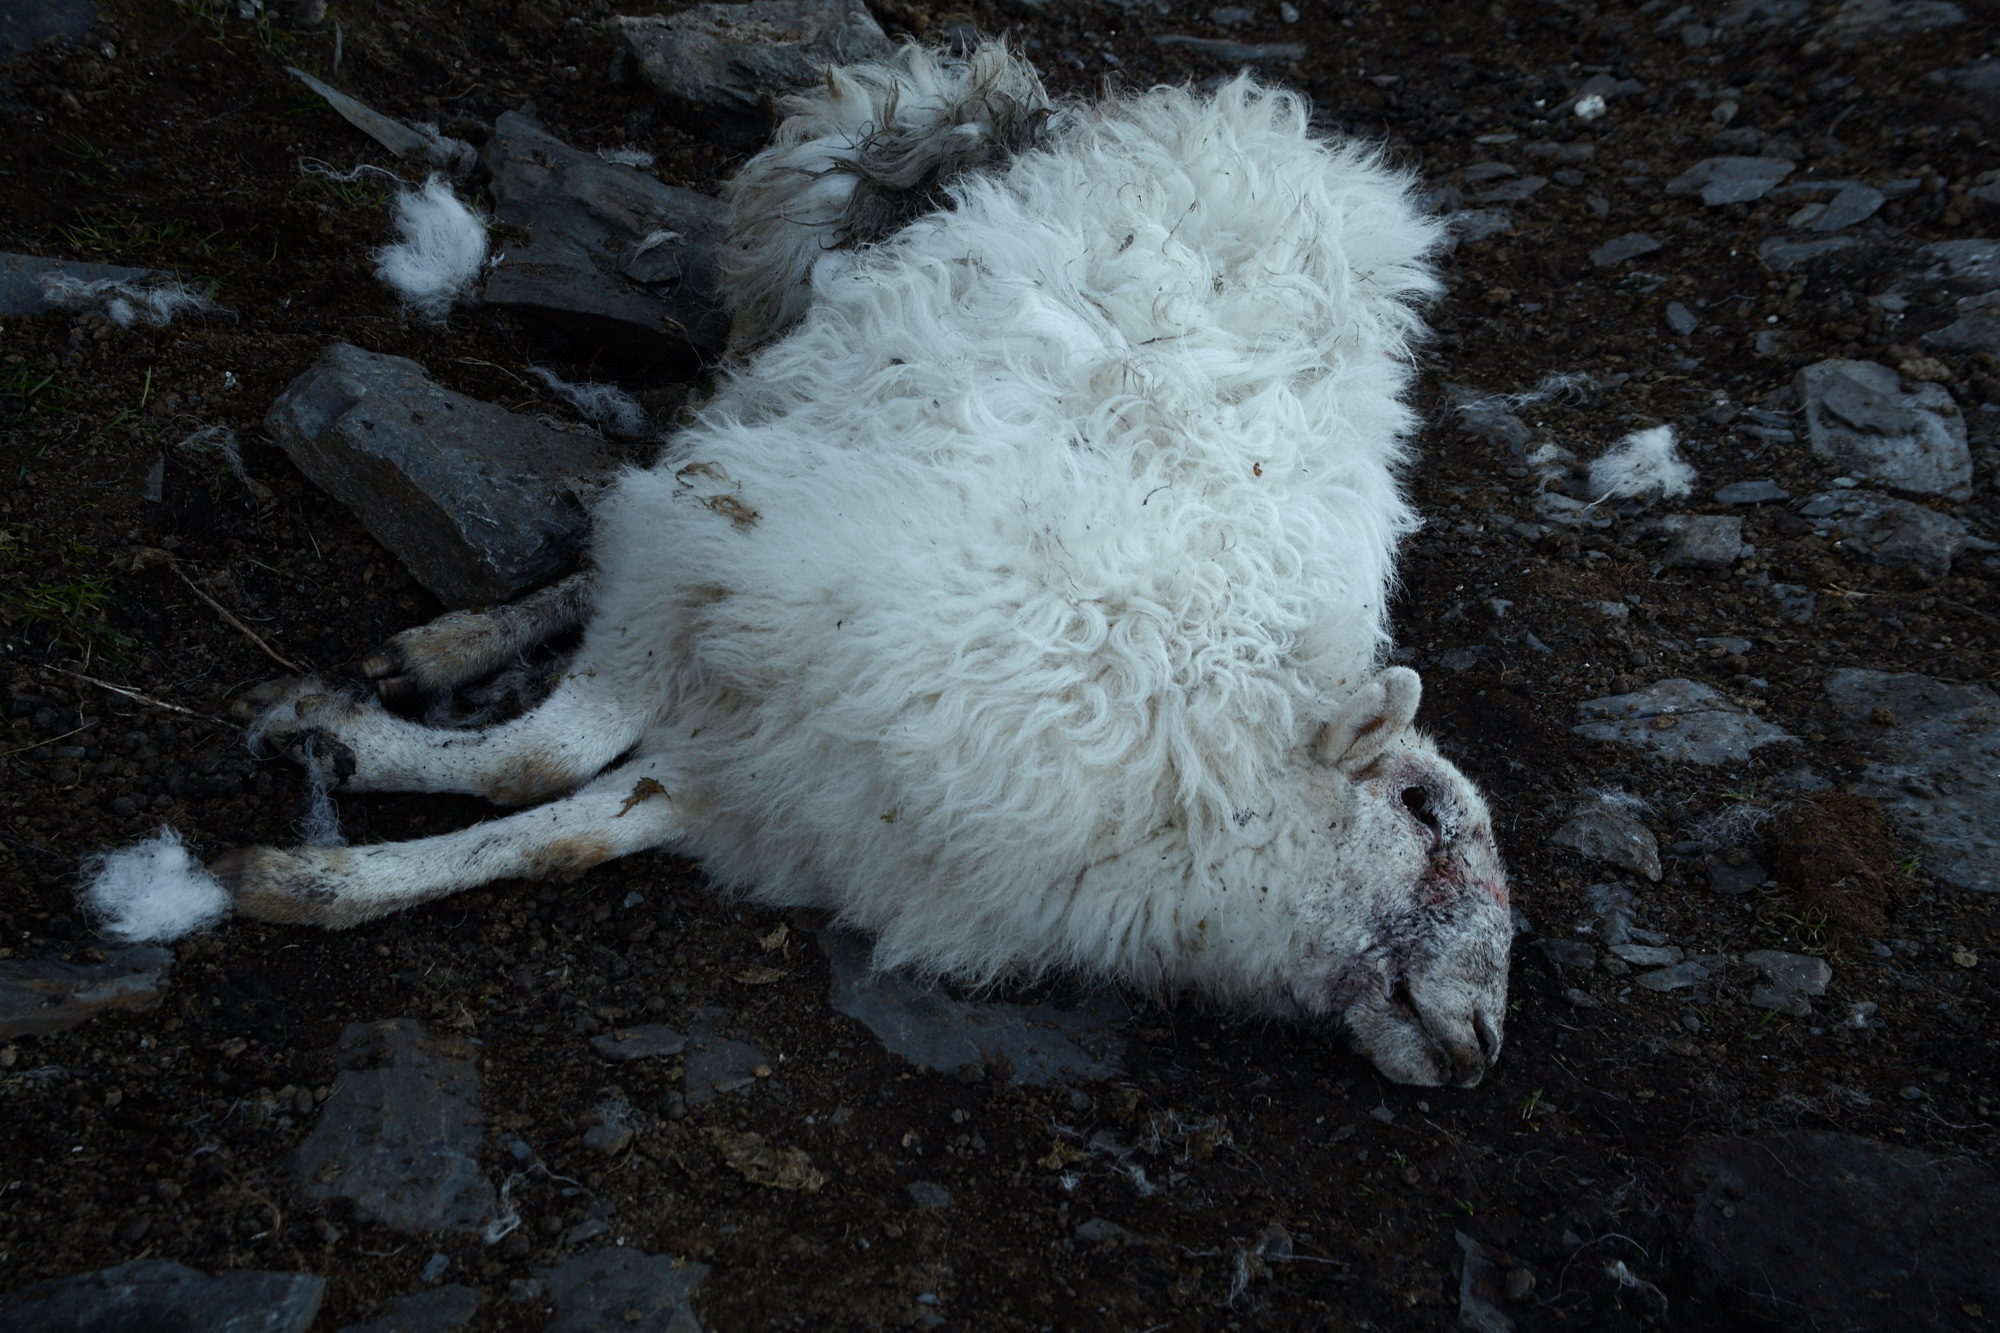 Dead sheep at Rhos Quarry, Capel Curig, Snowdonia, Wales